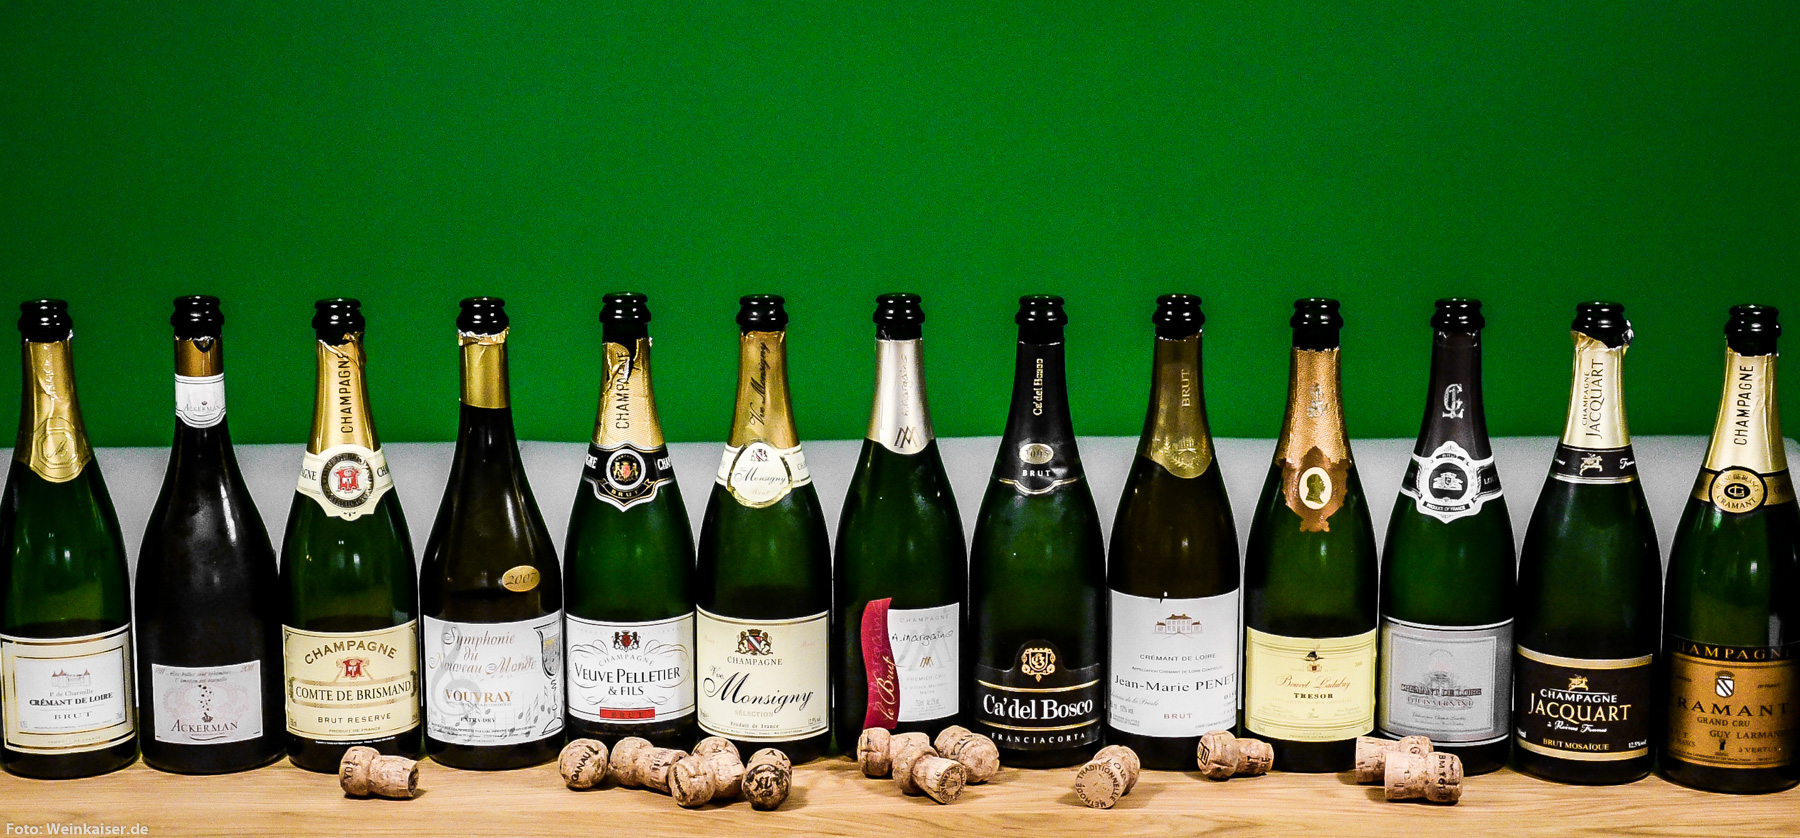 Stiftung Warentest macht PR für ALDI Billig-Champagner